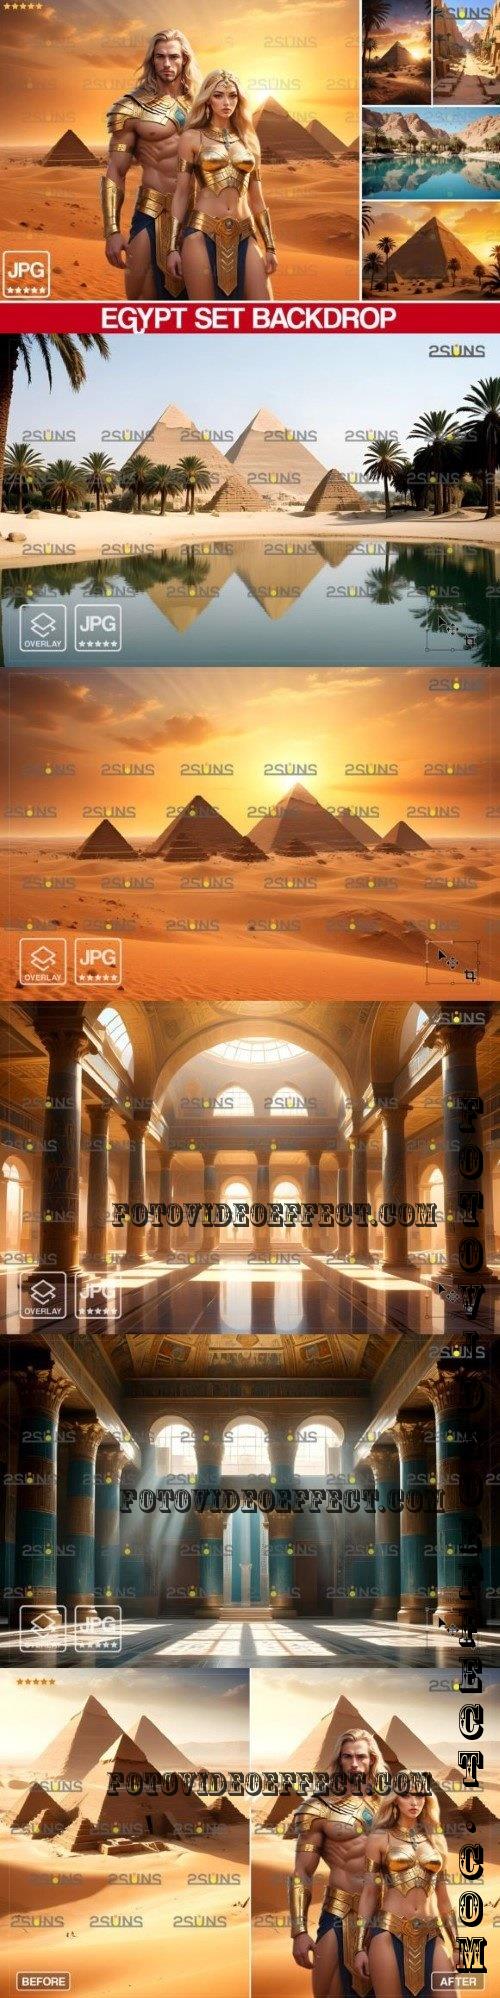 Ancient Egypt Backdrop, Egypt Photos Vol 01- 280188088